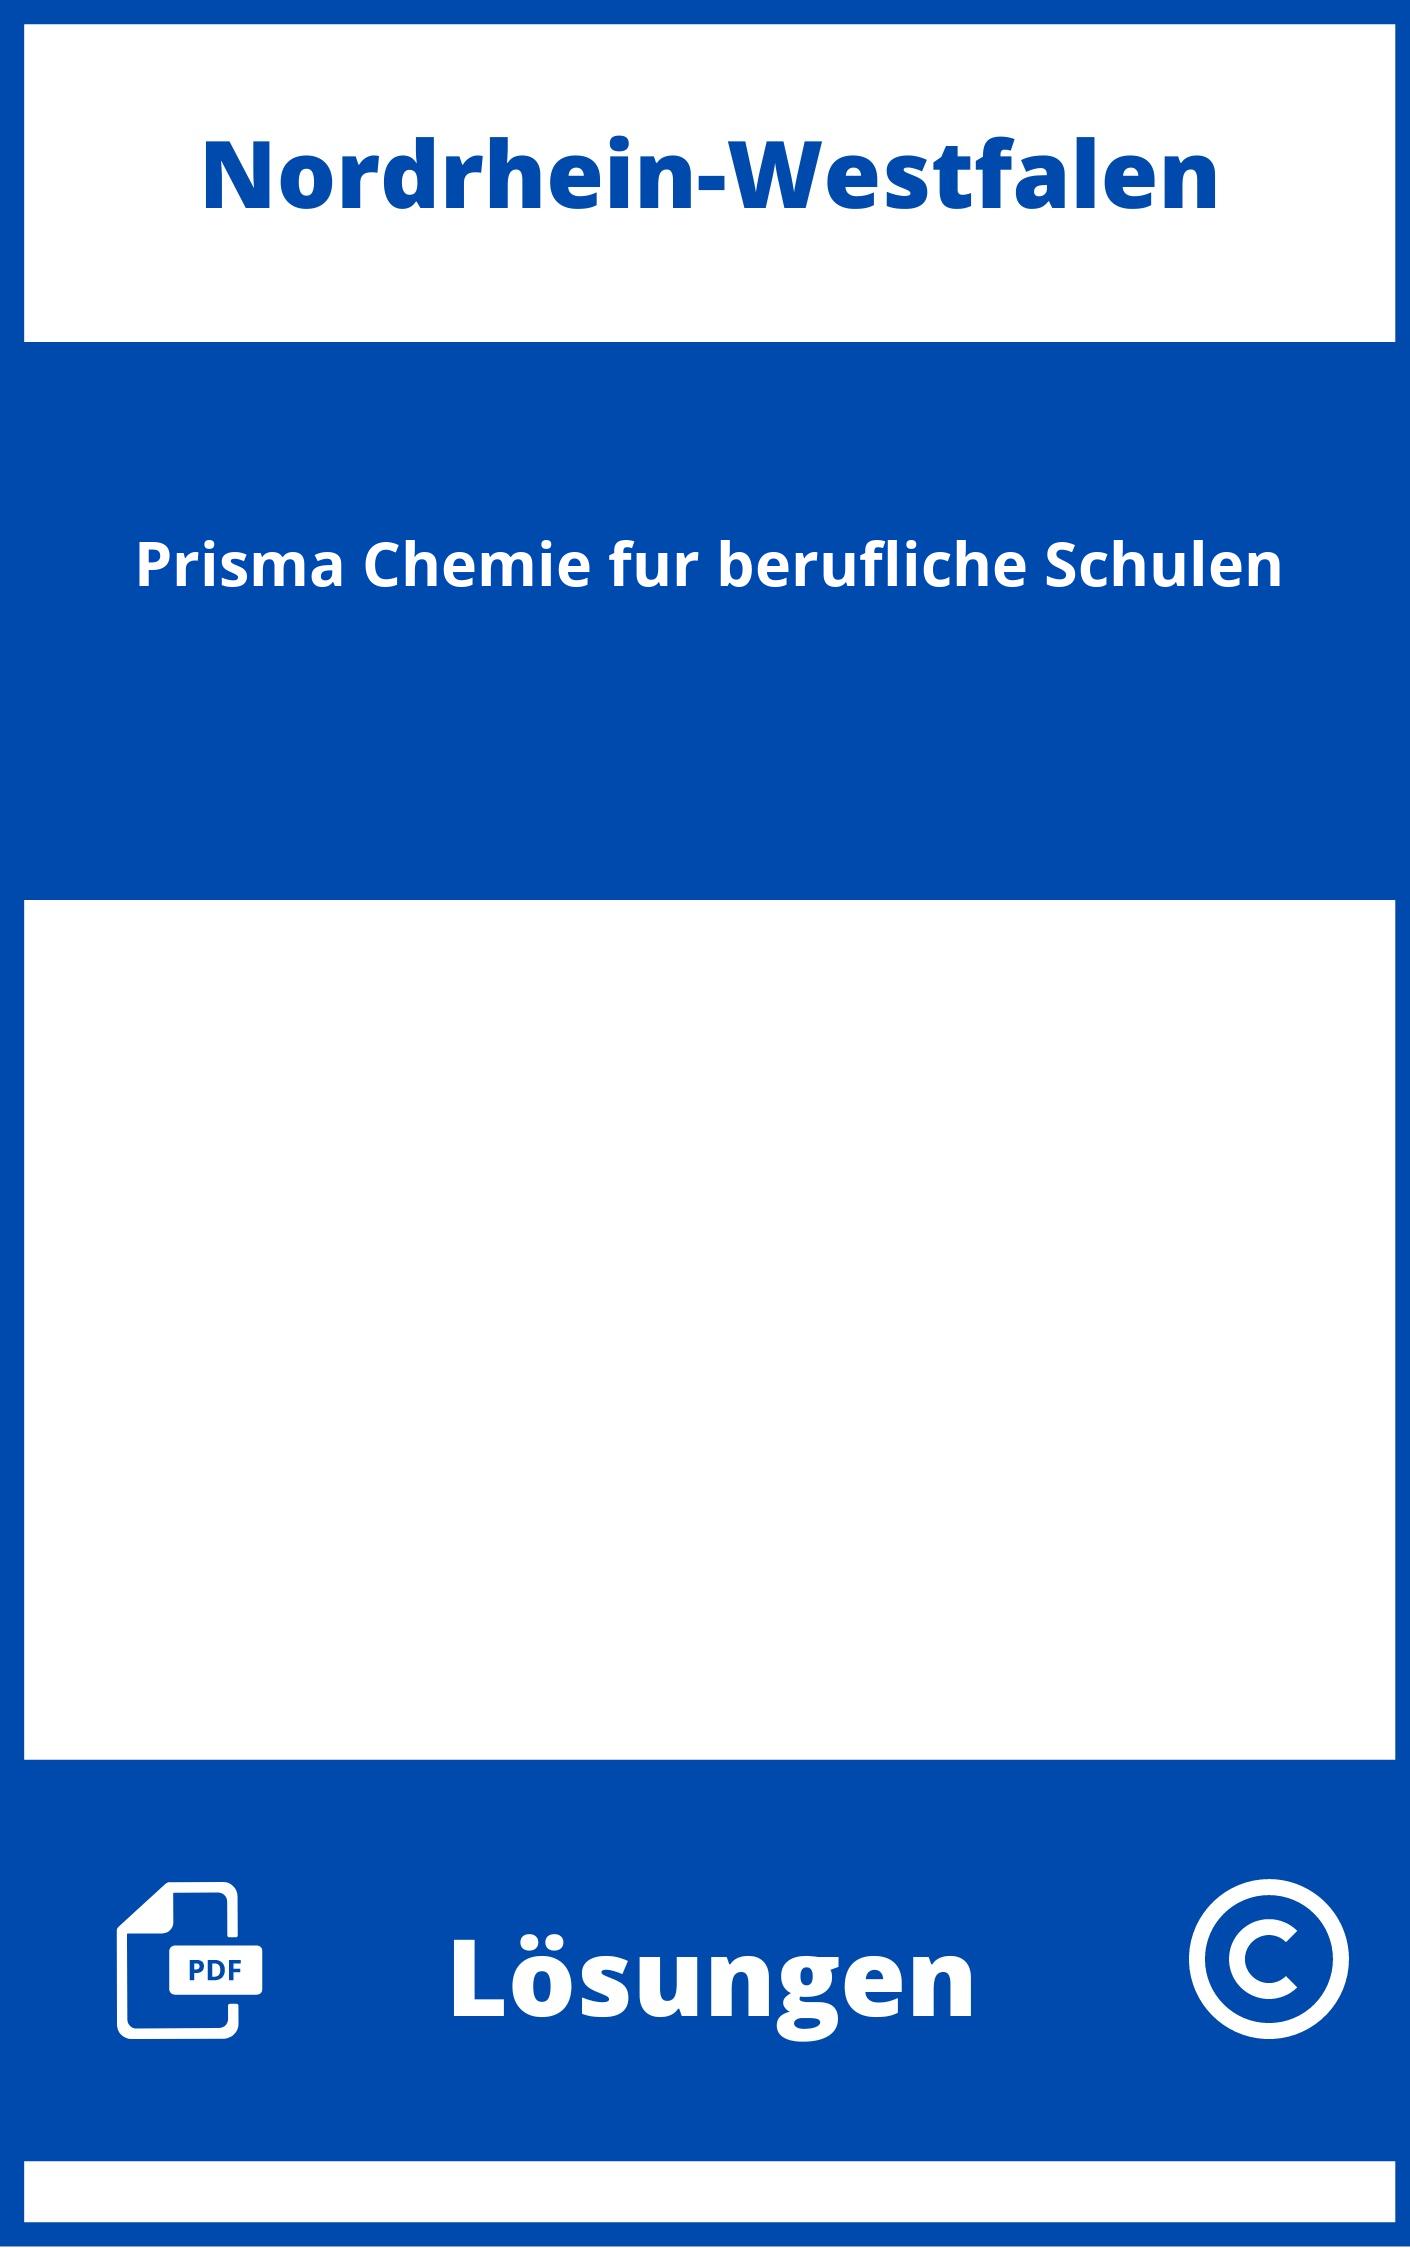 Prisma Chemie für berufliche Schulen Lösungen NRW PDF